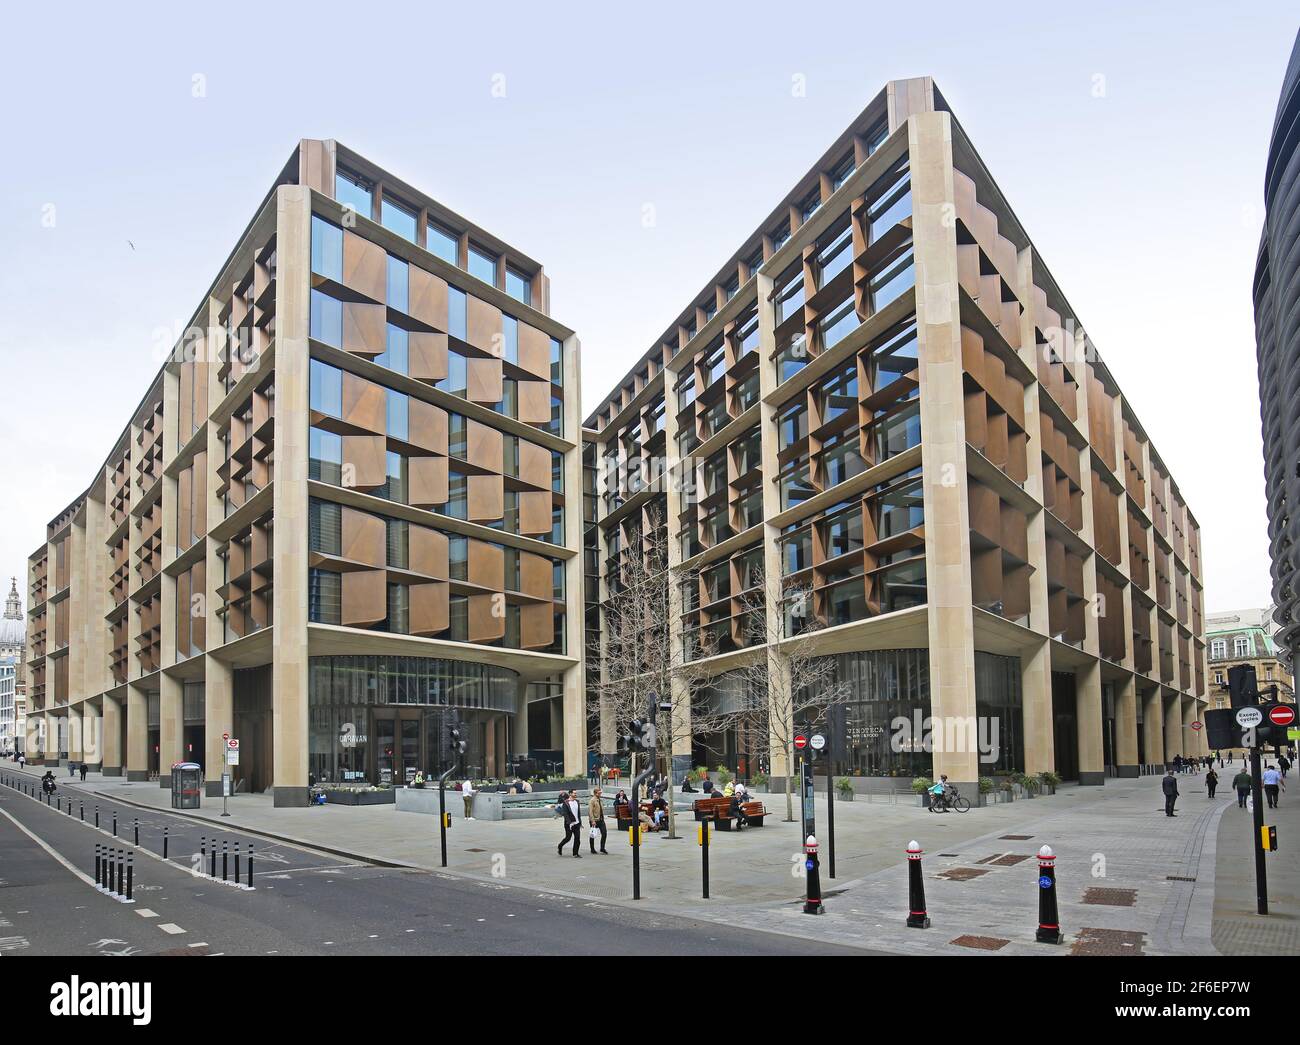 Le bâtiment du siège social de Bloomberg dans la City de Londres, au Royaume-Uni. Il a remporté le prix RIBA Sterling pour les architectes Foster + Partners en 2018. Élévation de Cannon Street. Banque D'Images